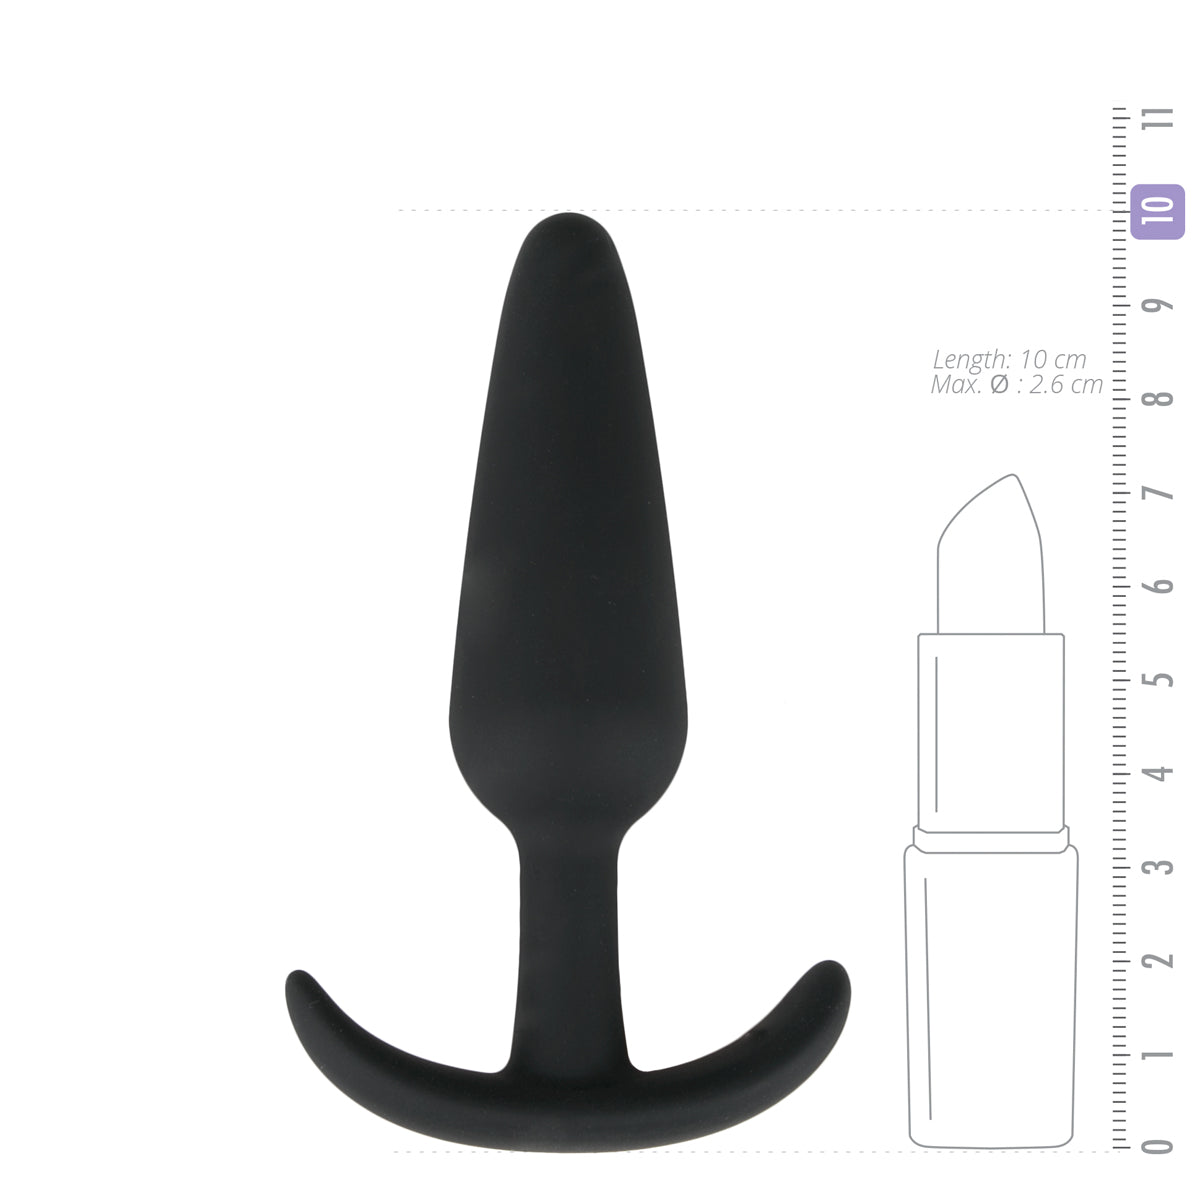 Zwarte Butt Plug met Handvat. De butt plug is 10 cm lang, van het merk EasyToys Anal Collection en te koop bij Flavourez.